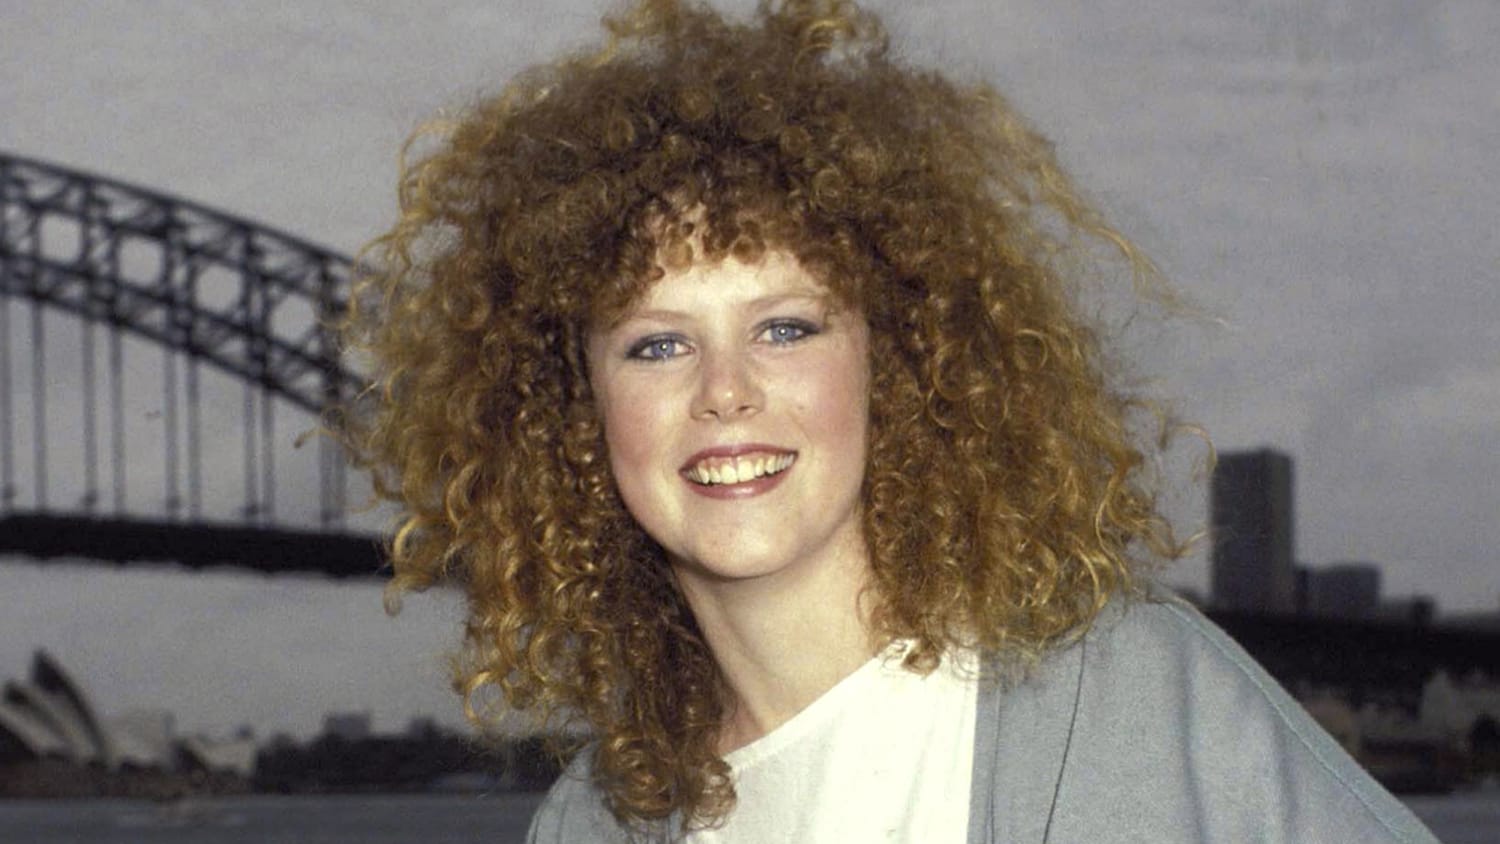 Nicole Kidman 1983 Hair Today 170406 Tease E5269f8b9613ac6ac5418ed2839e4d2c 